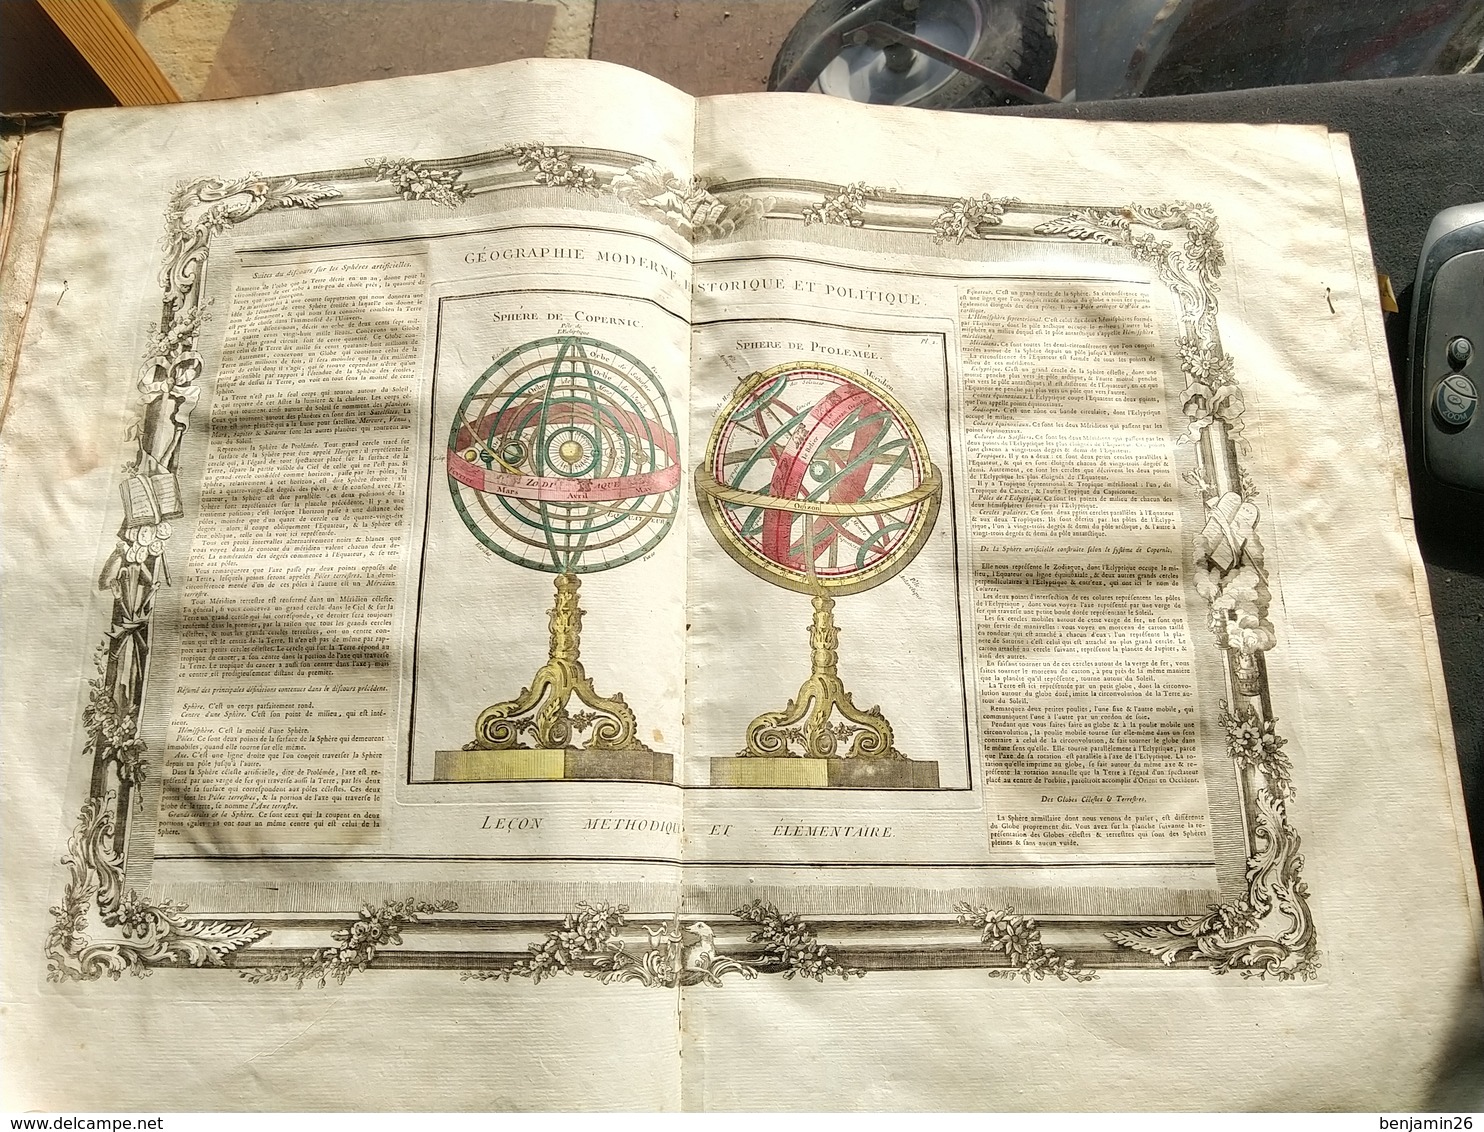 Atlas de Desnos, 1786